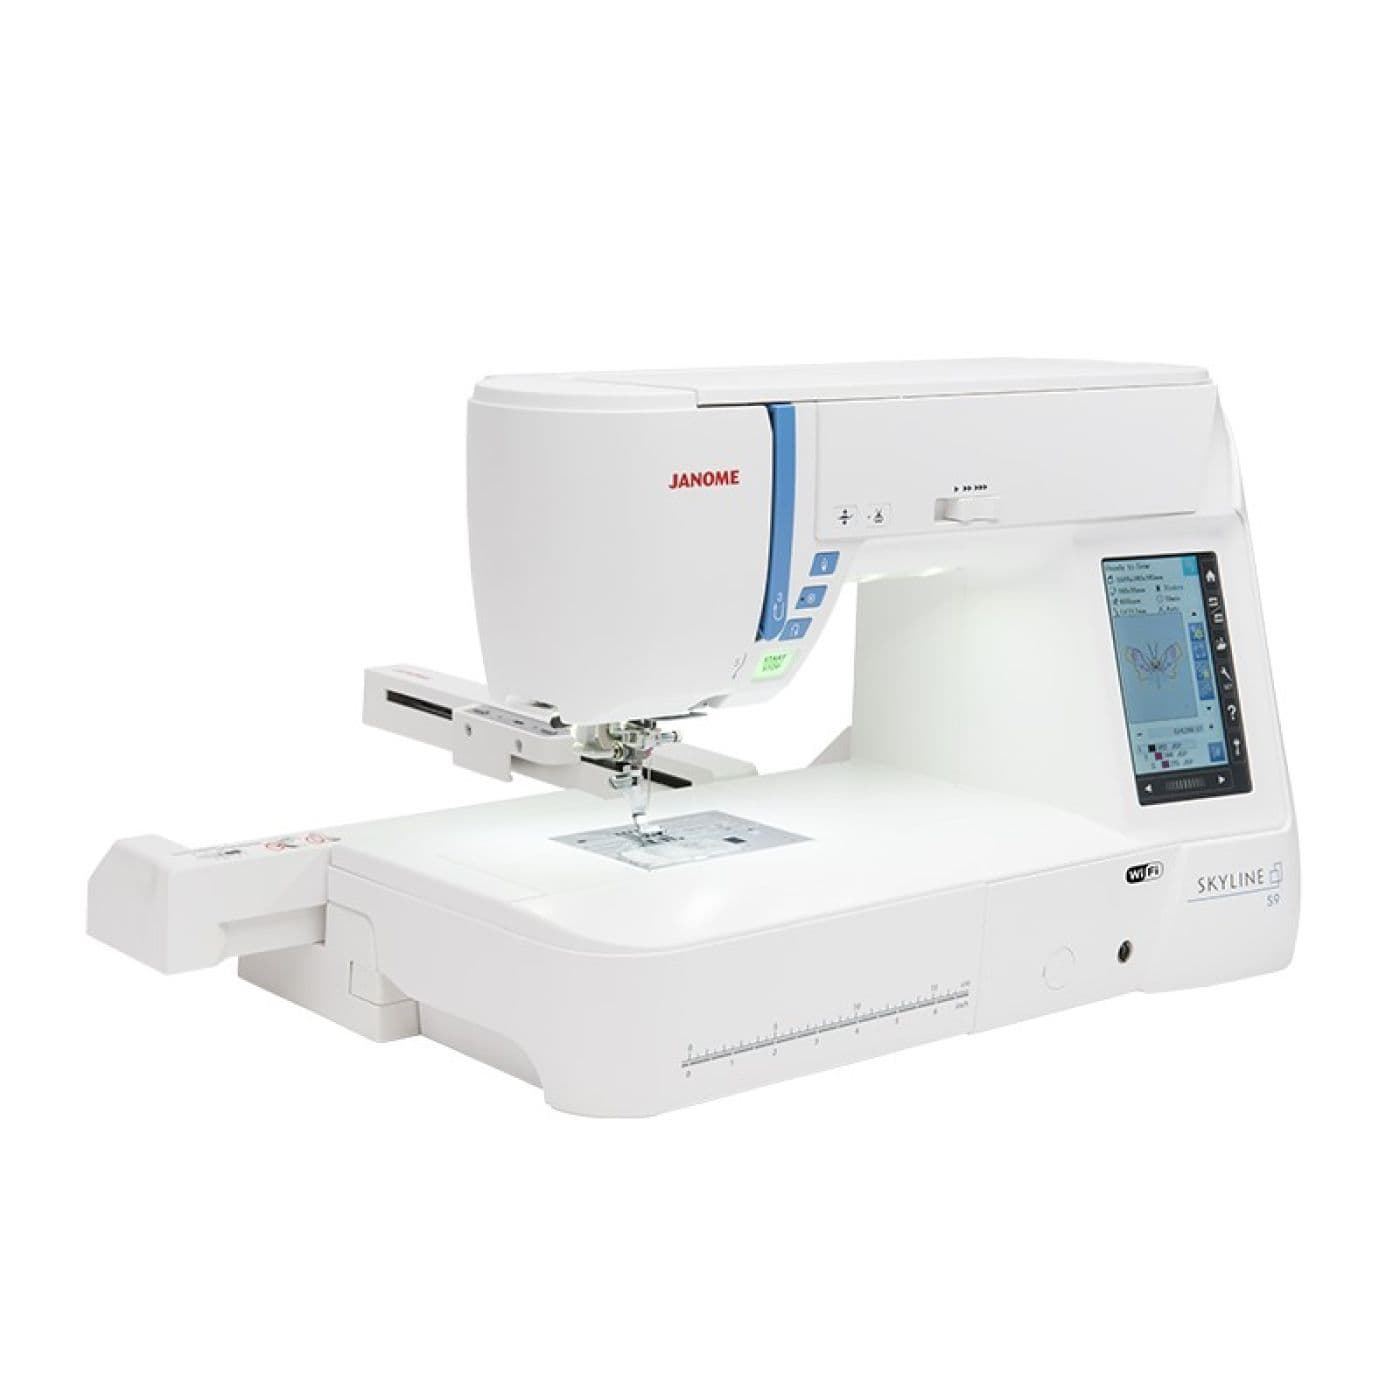 COSER Y BORDAR JANOME SKYLINE S9 - Máquina de coser electrónica - Imagen 3